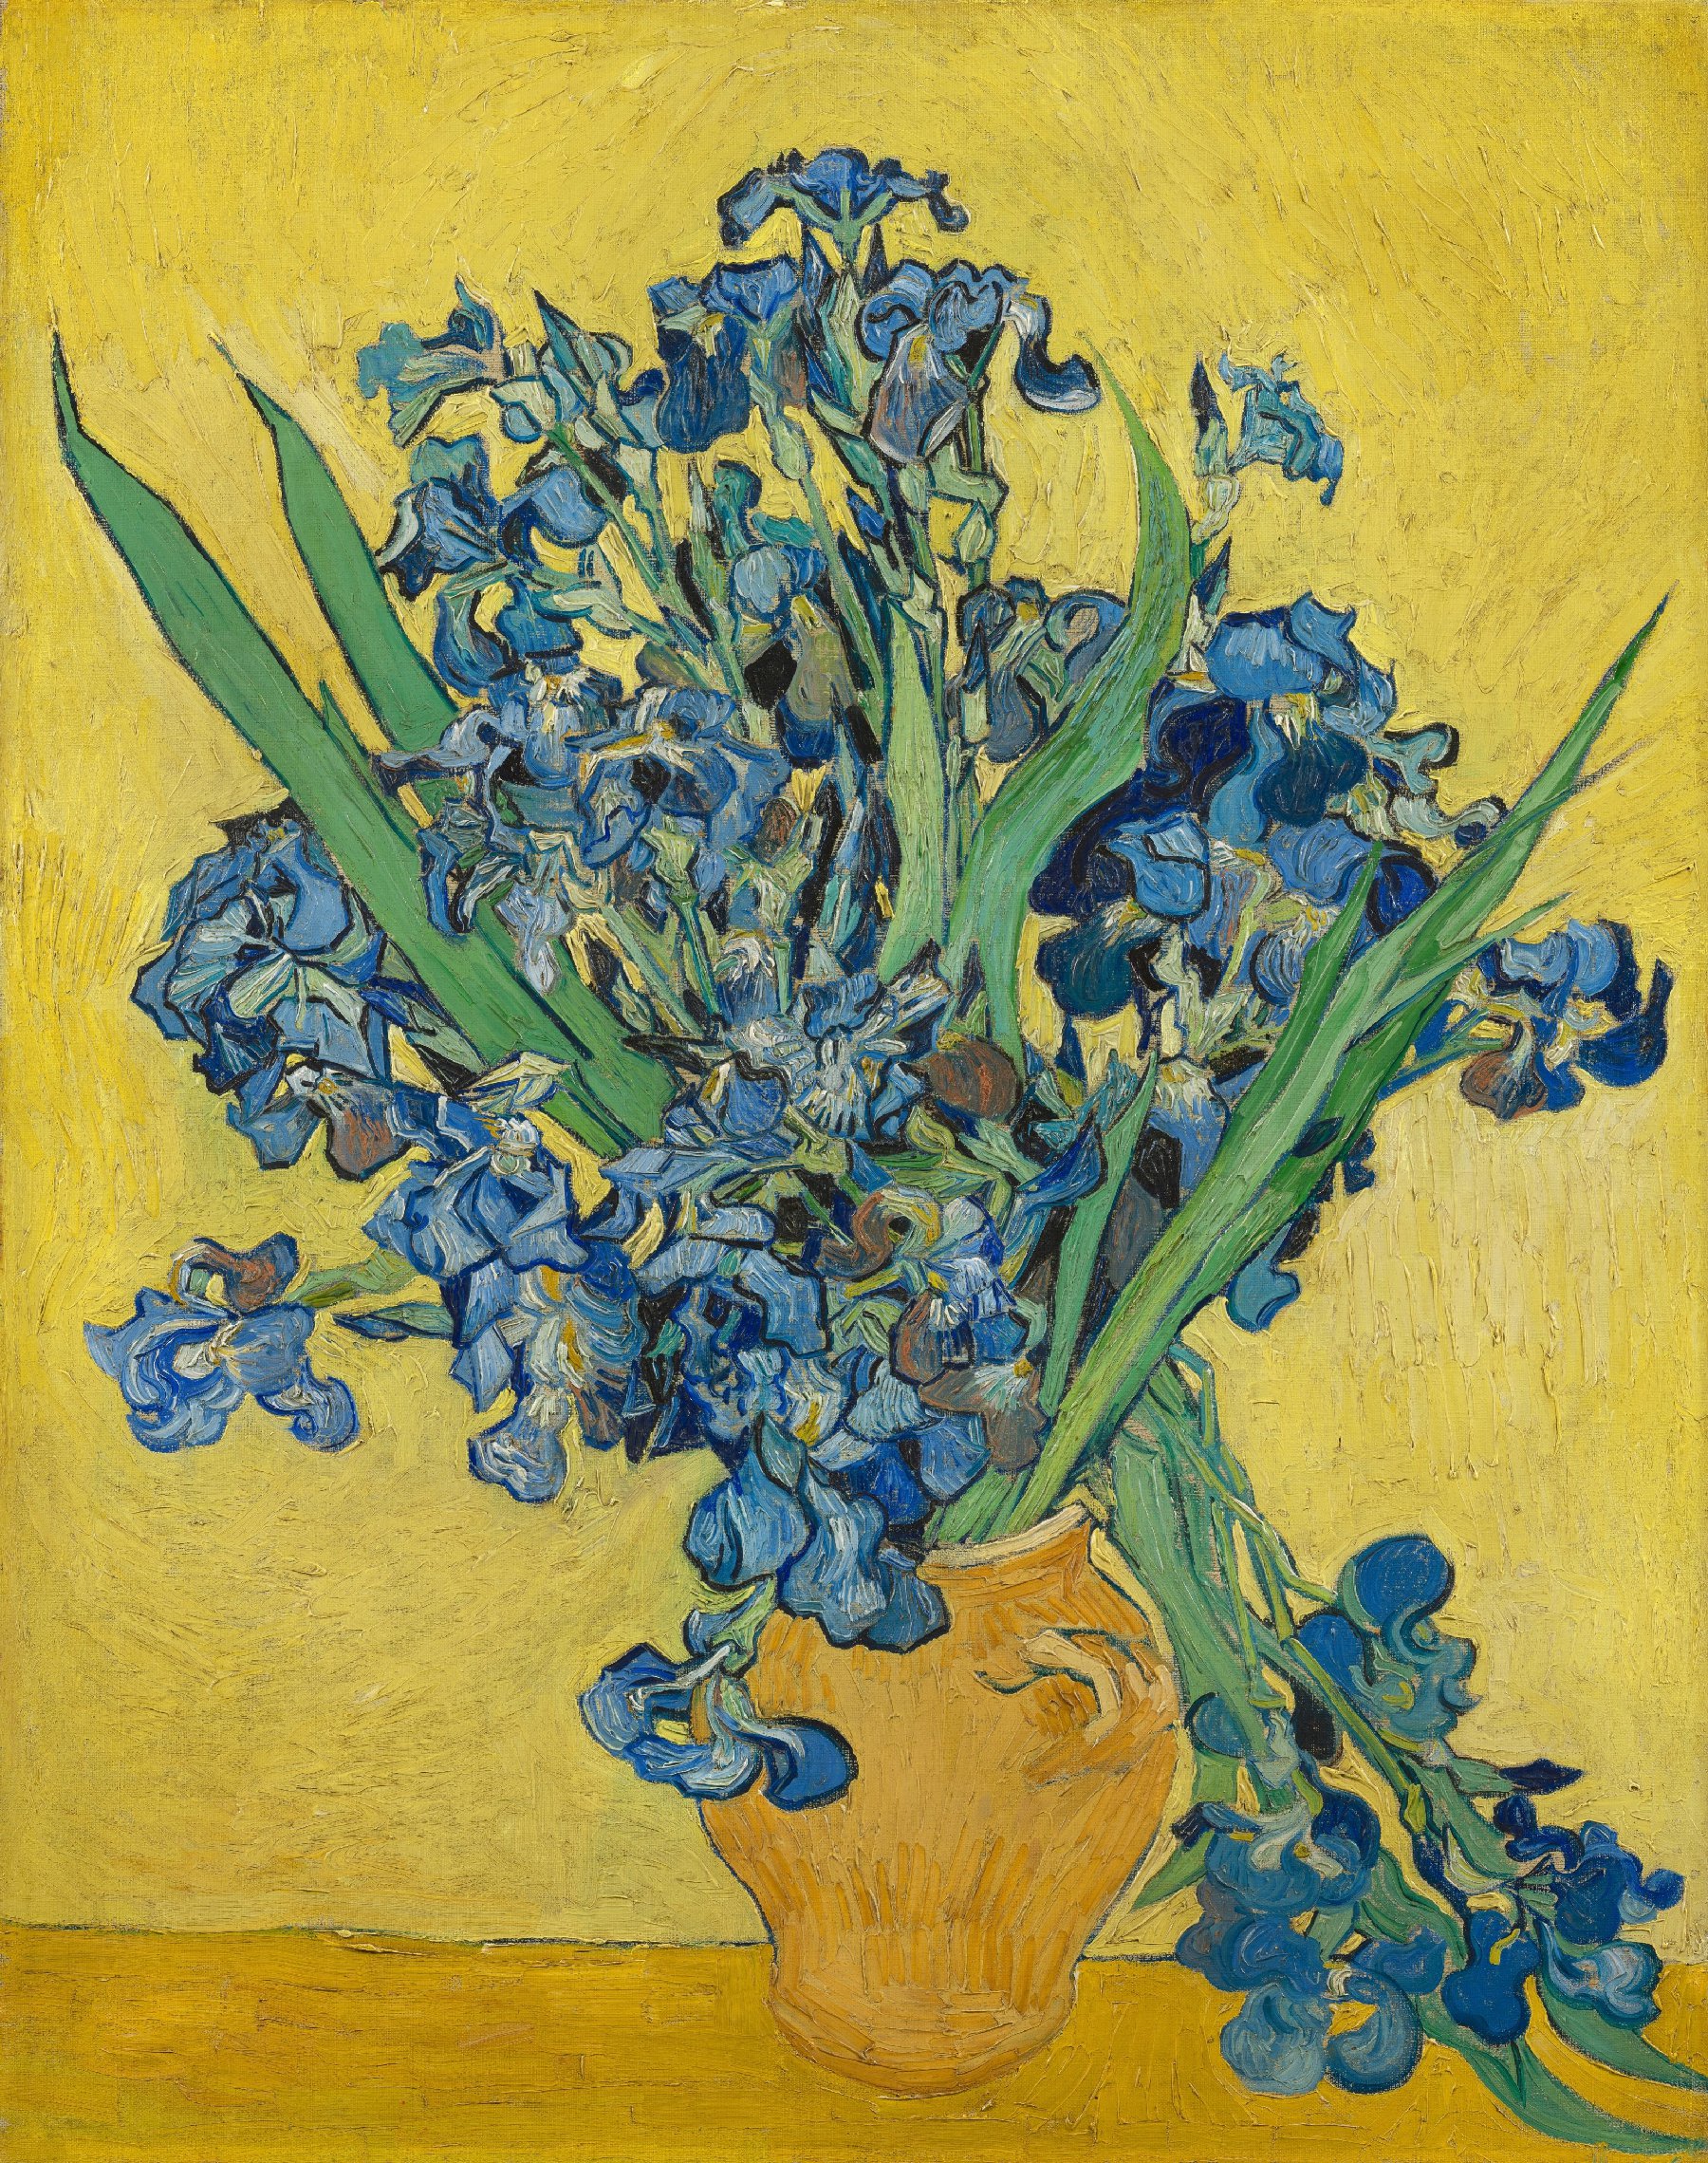 Irissen Vincent van Gogh (1853 - 1890), Saint-Rémy-de-Provence, mei 1890